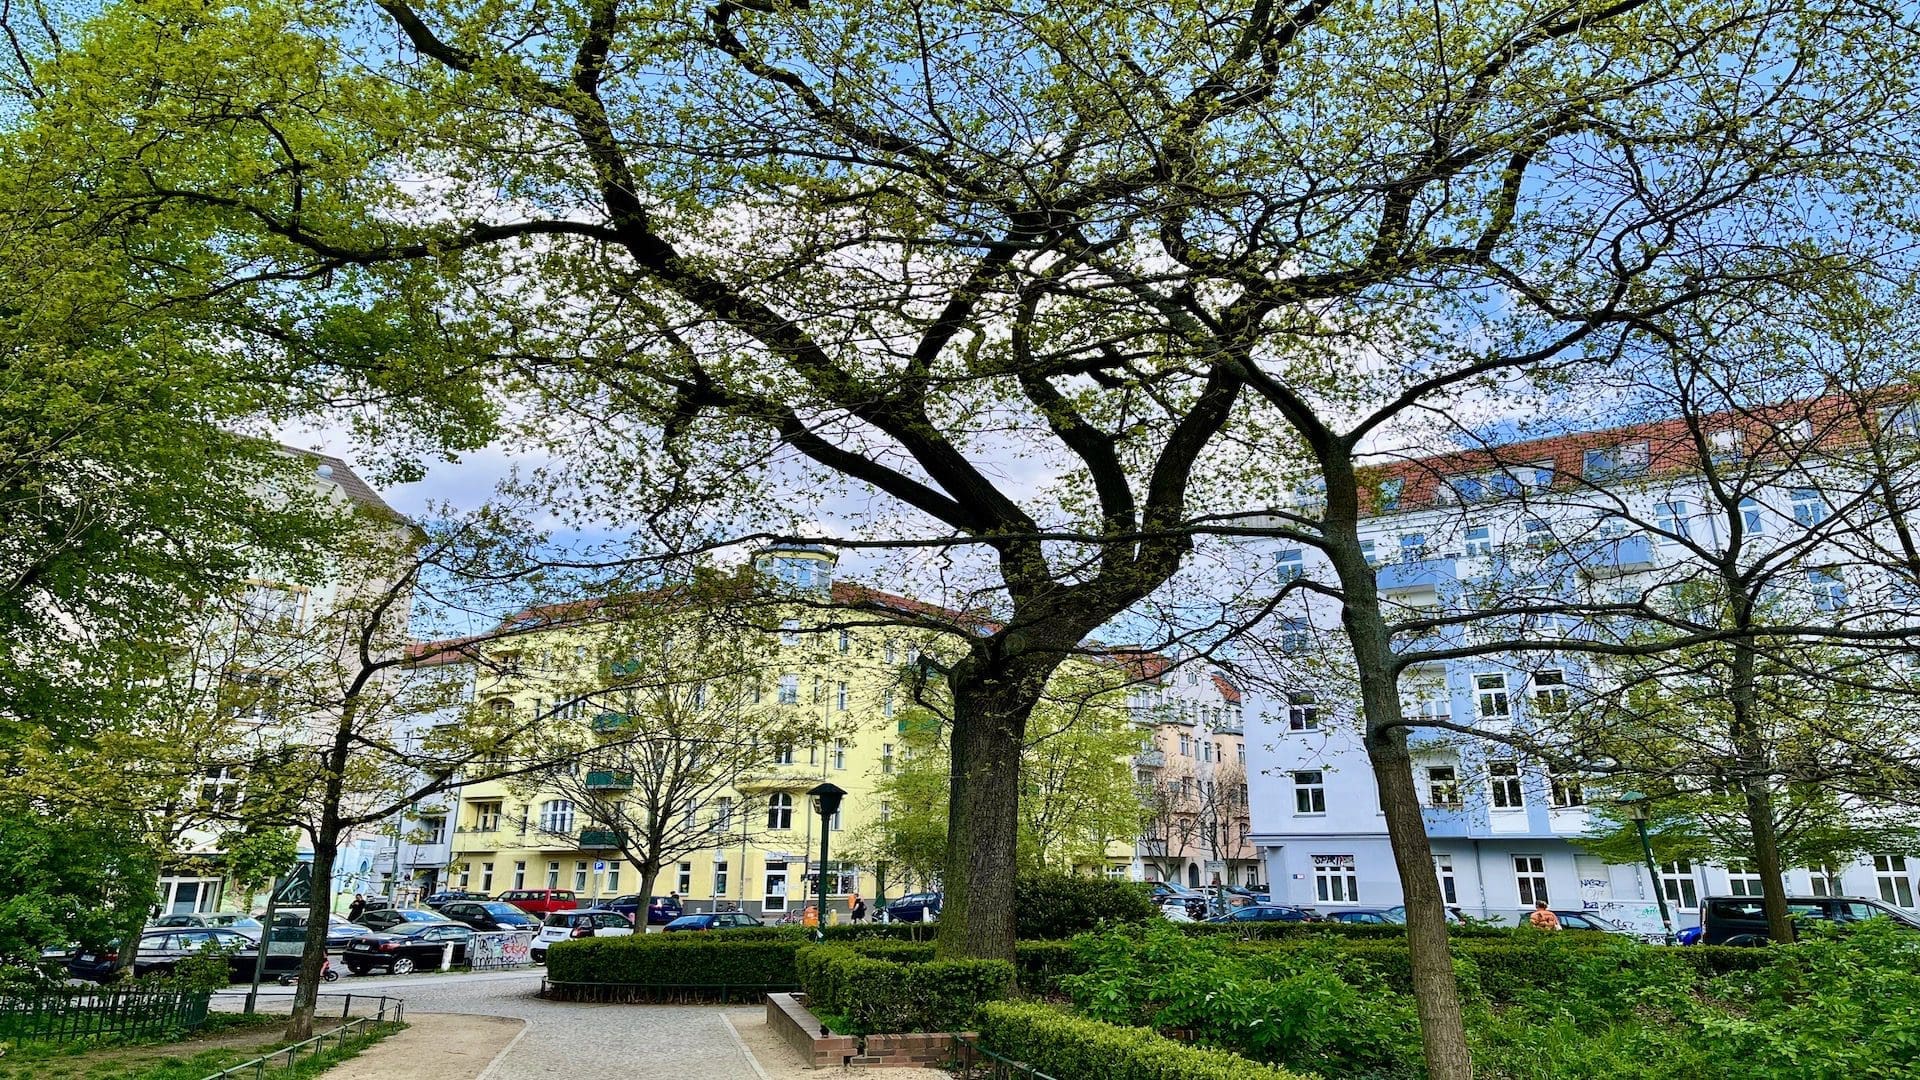 Picturesque neighborhood and square in Berlin Prenzlauer Berg